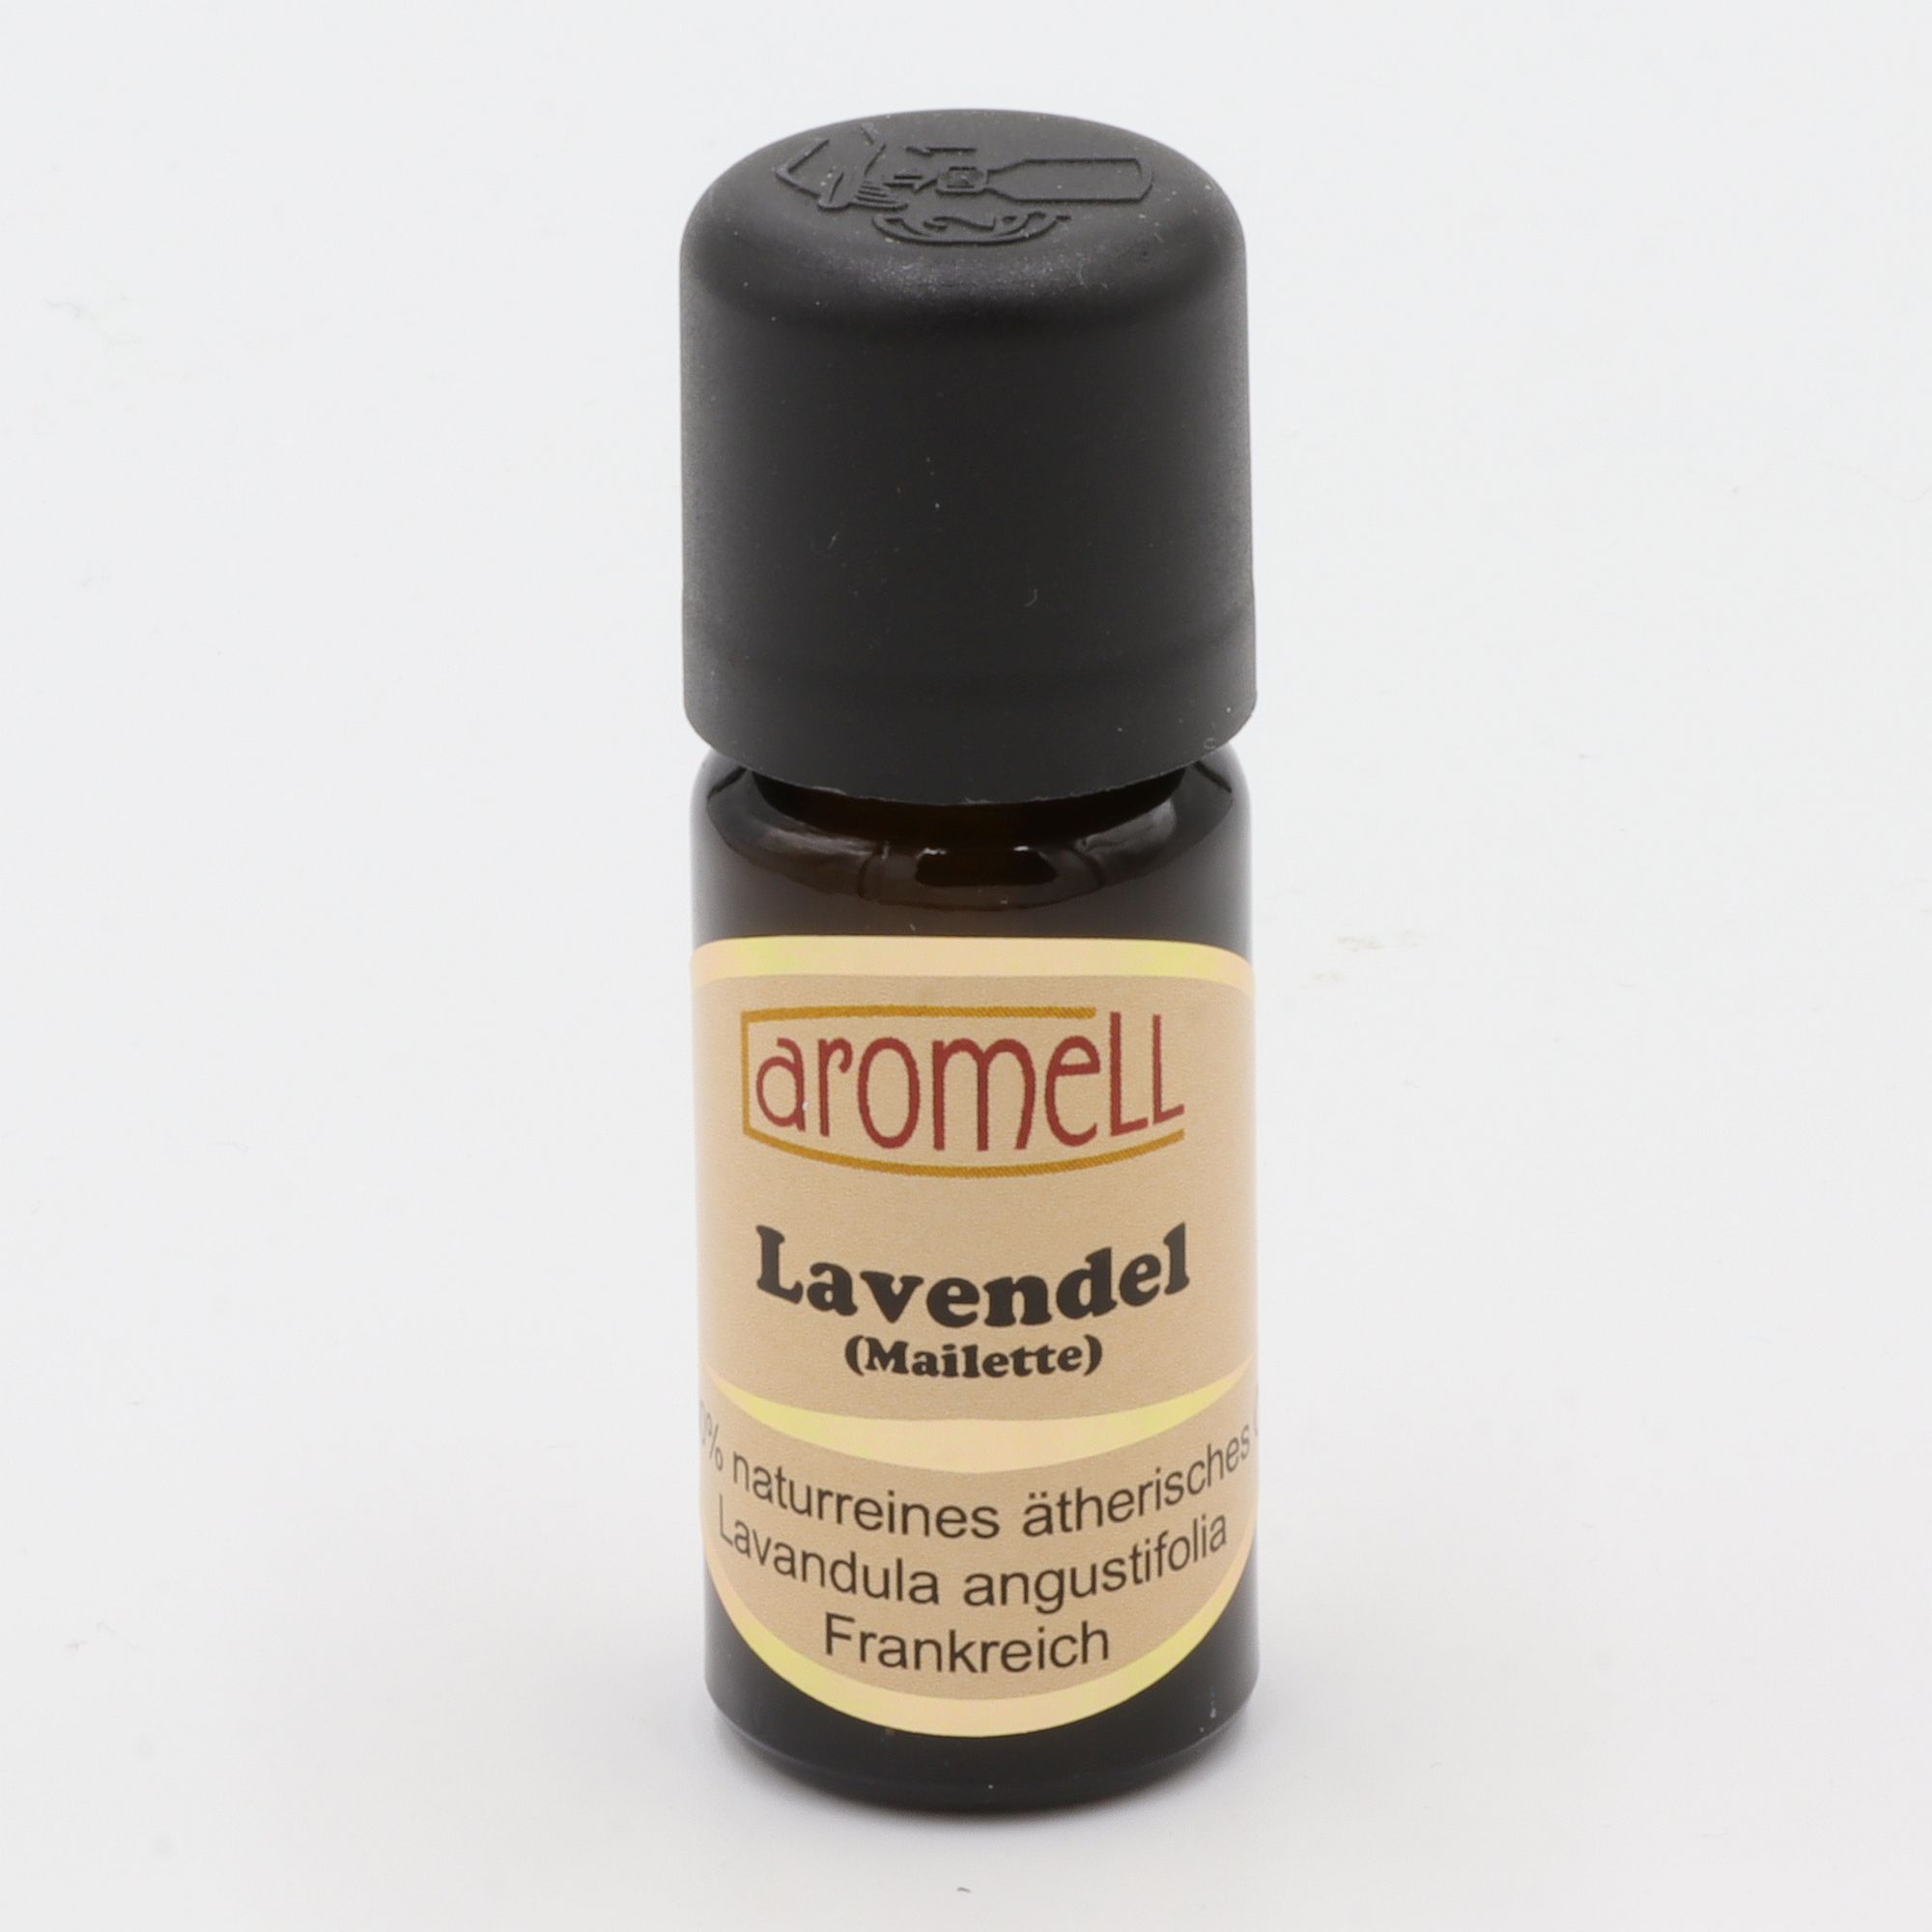 Ätherisches Öl - Aromell - Lavendel (Mailette) - 100% naturrein - Lavendula Angustifolia aus Frankreich - aromatischer Raumduft für Dein Wohlbefinden - Glas mit Tropfendosierung